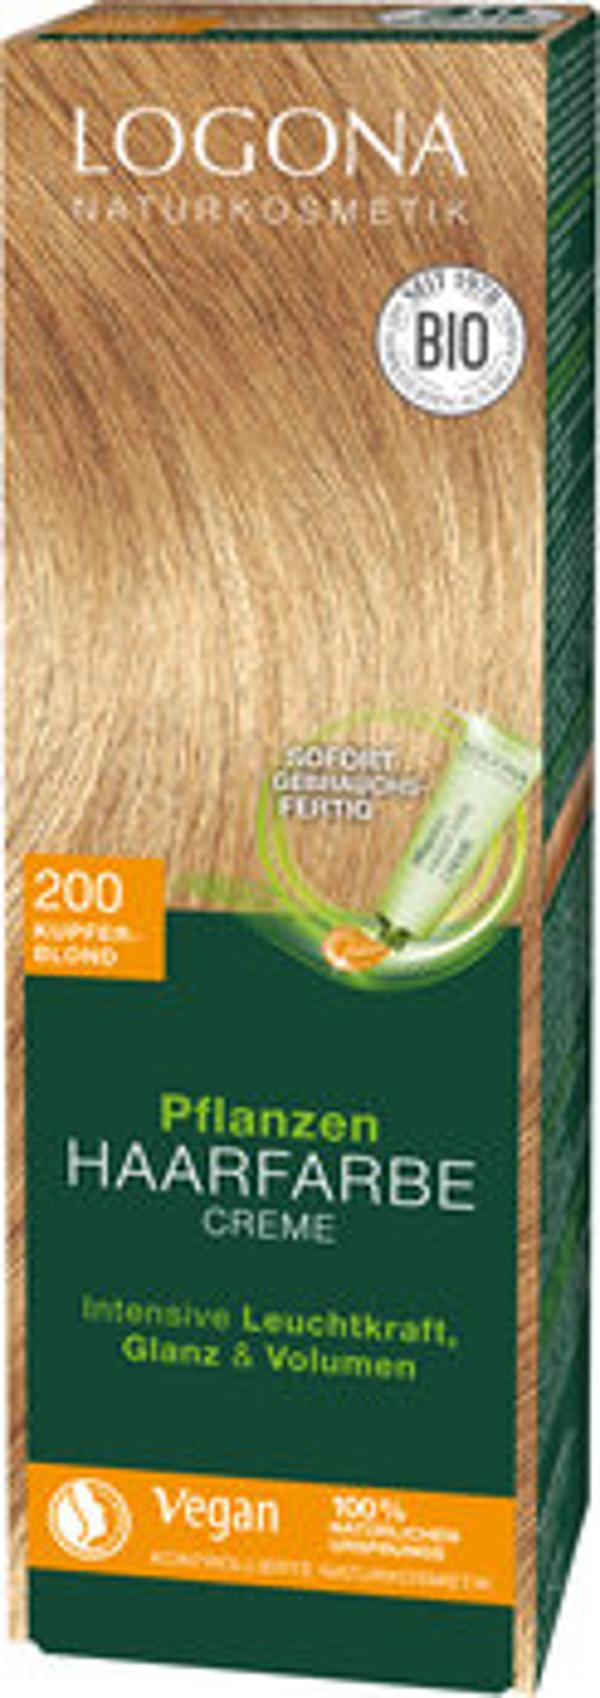 Produktfoto zu Pflanzen Haarfarbe Creme 200 kupferblond 150ml